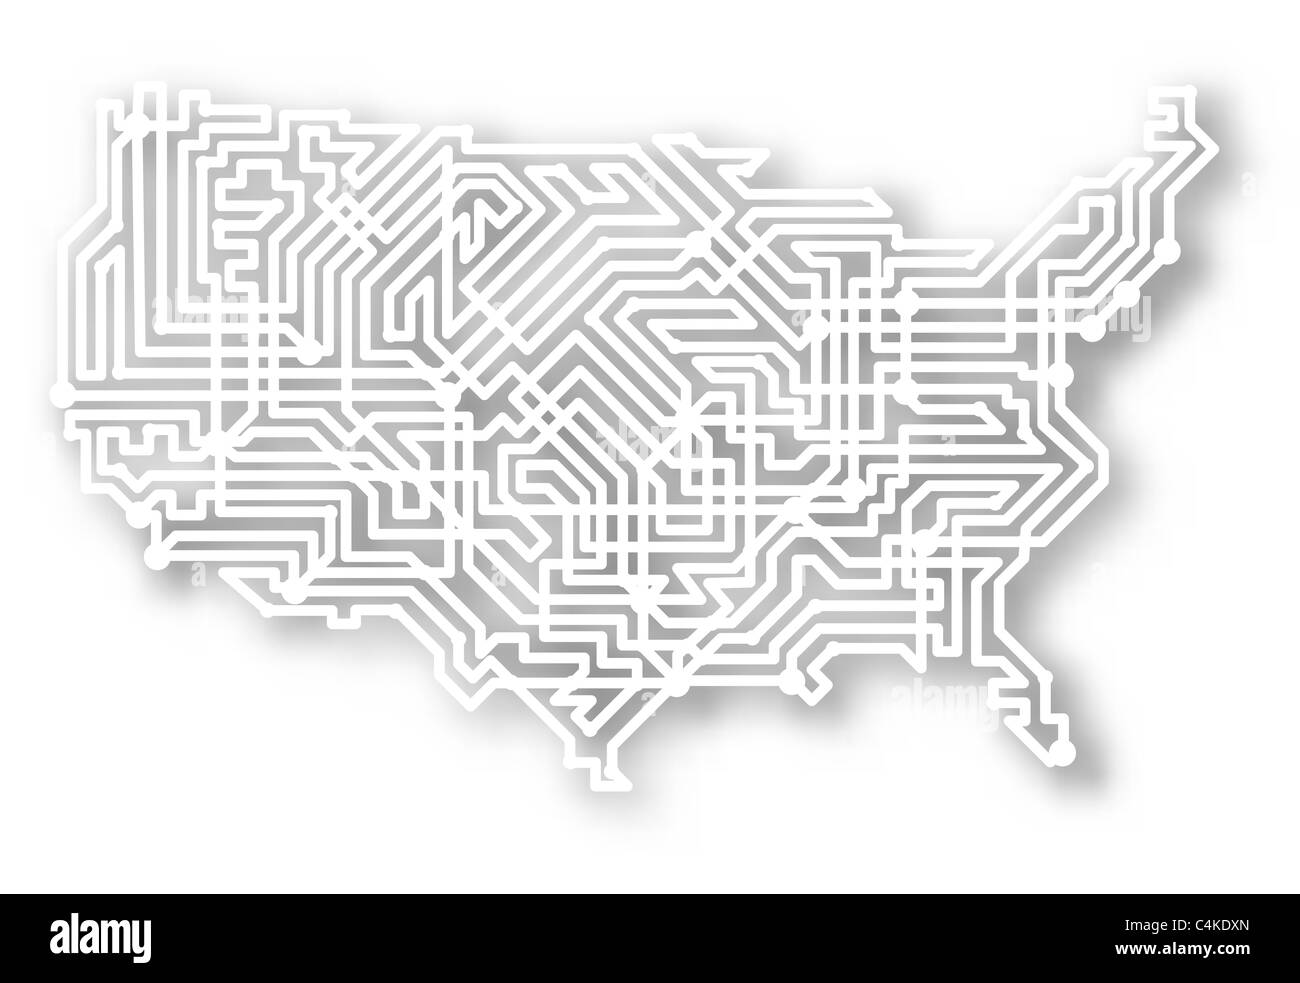 Stilisierte Landkarte der USA mit Hintergrund Schatten dargestellt Stockfoto